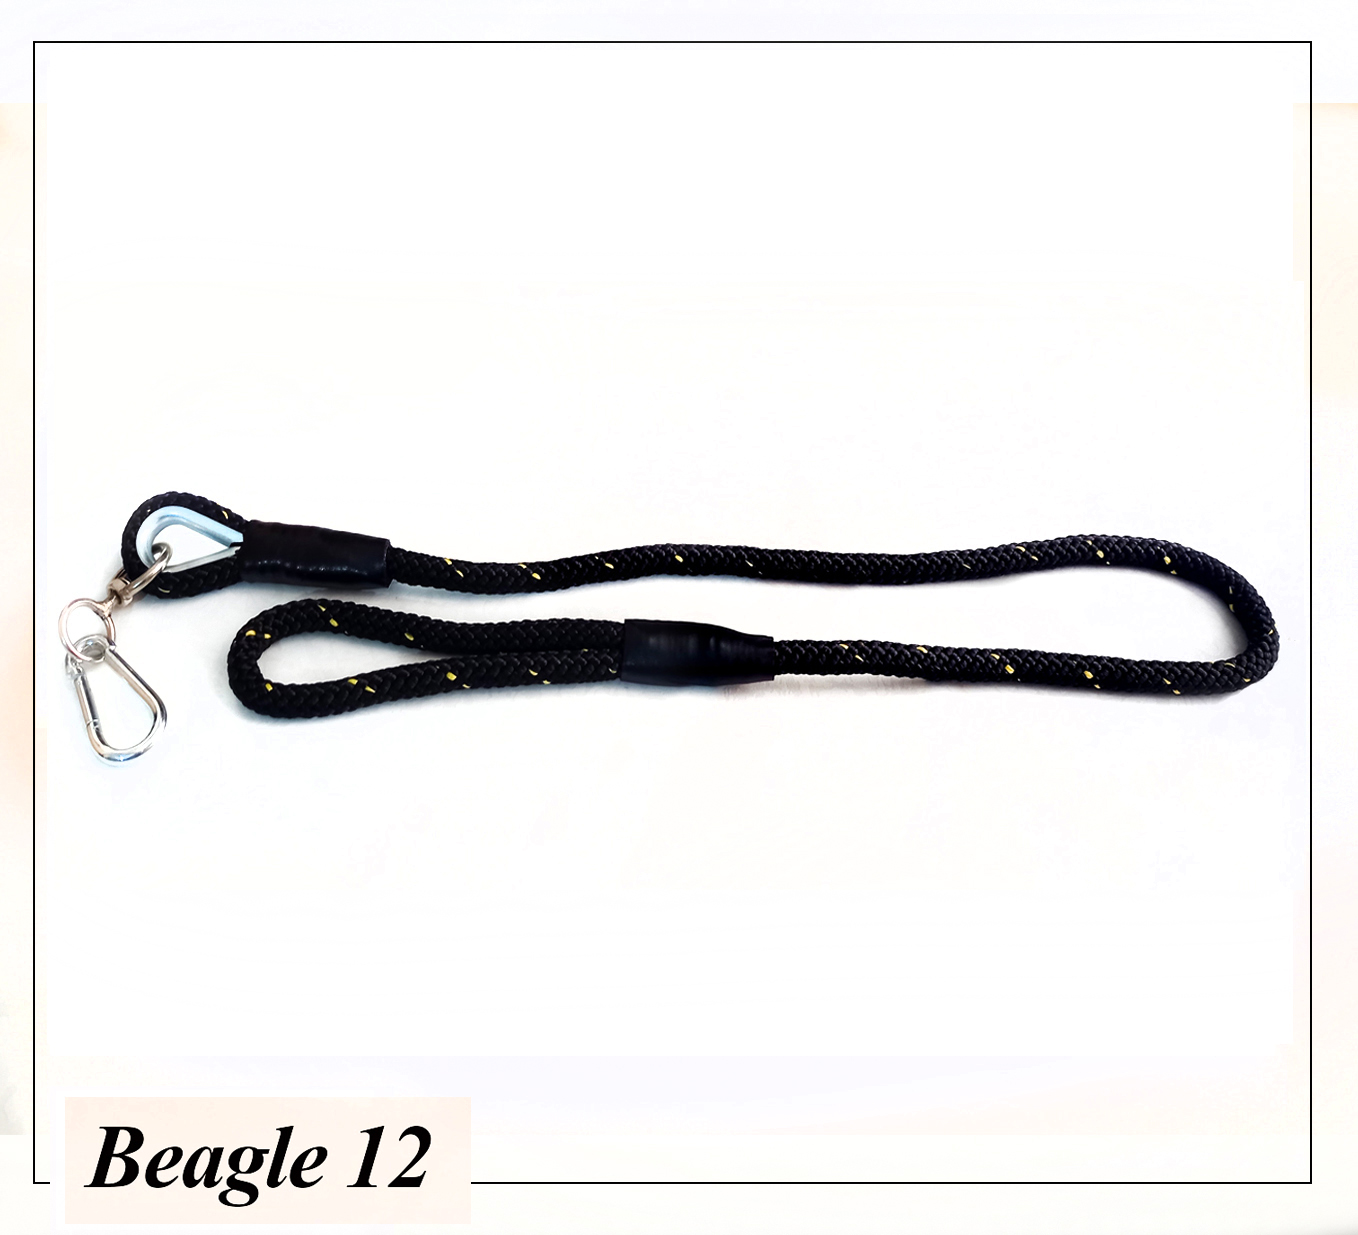 لید بیگل 12 تهیه شده از طناب 12 ، با دوام و مقاومت بالا ، مناسب برای انواع سگ می باشد.